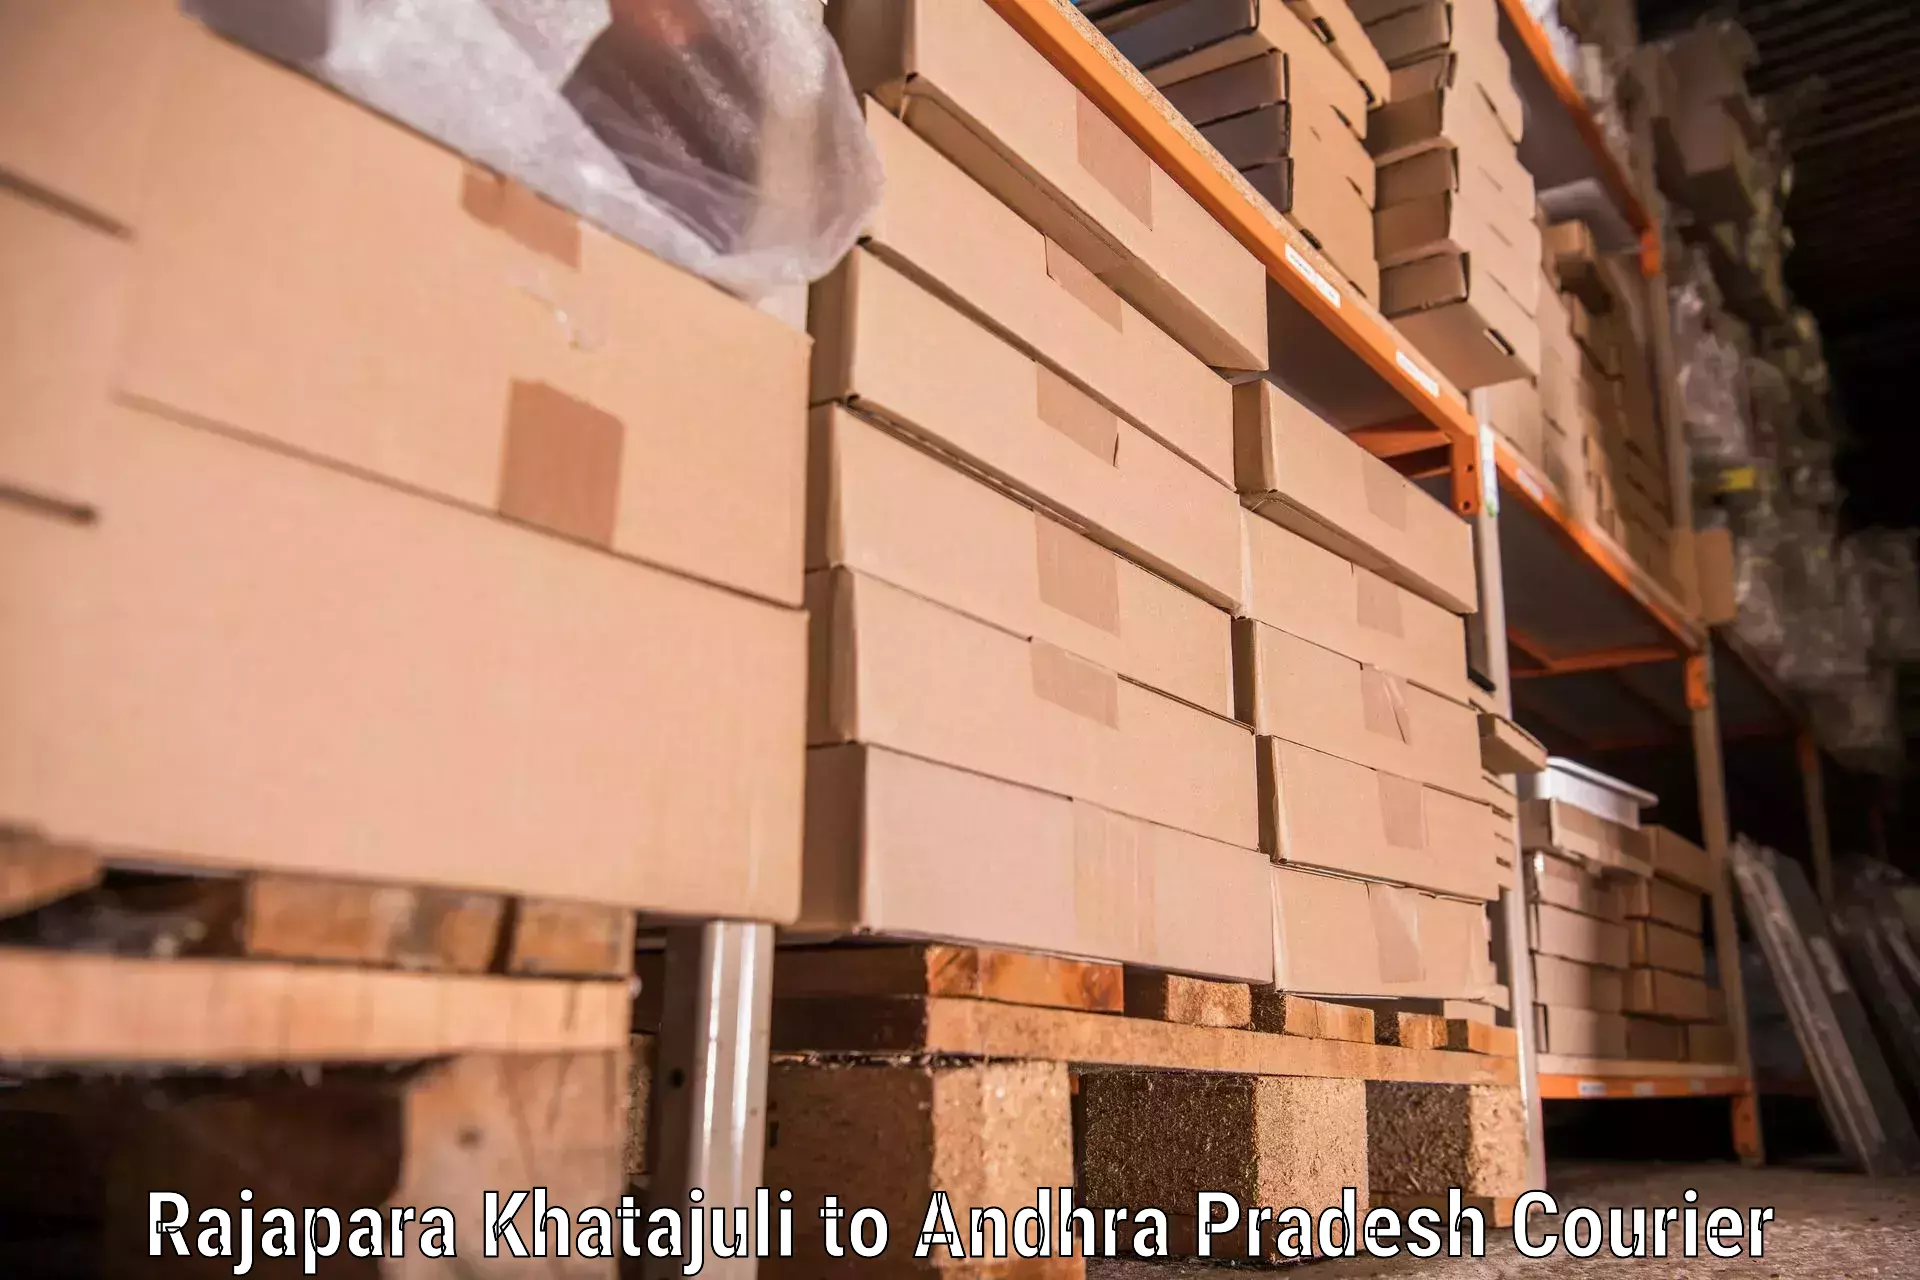 Moving and packing experts in Rajapara Khatajuli to Tada Tirupati